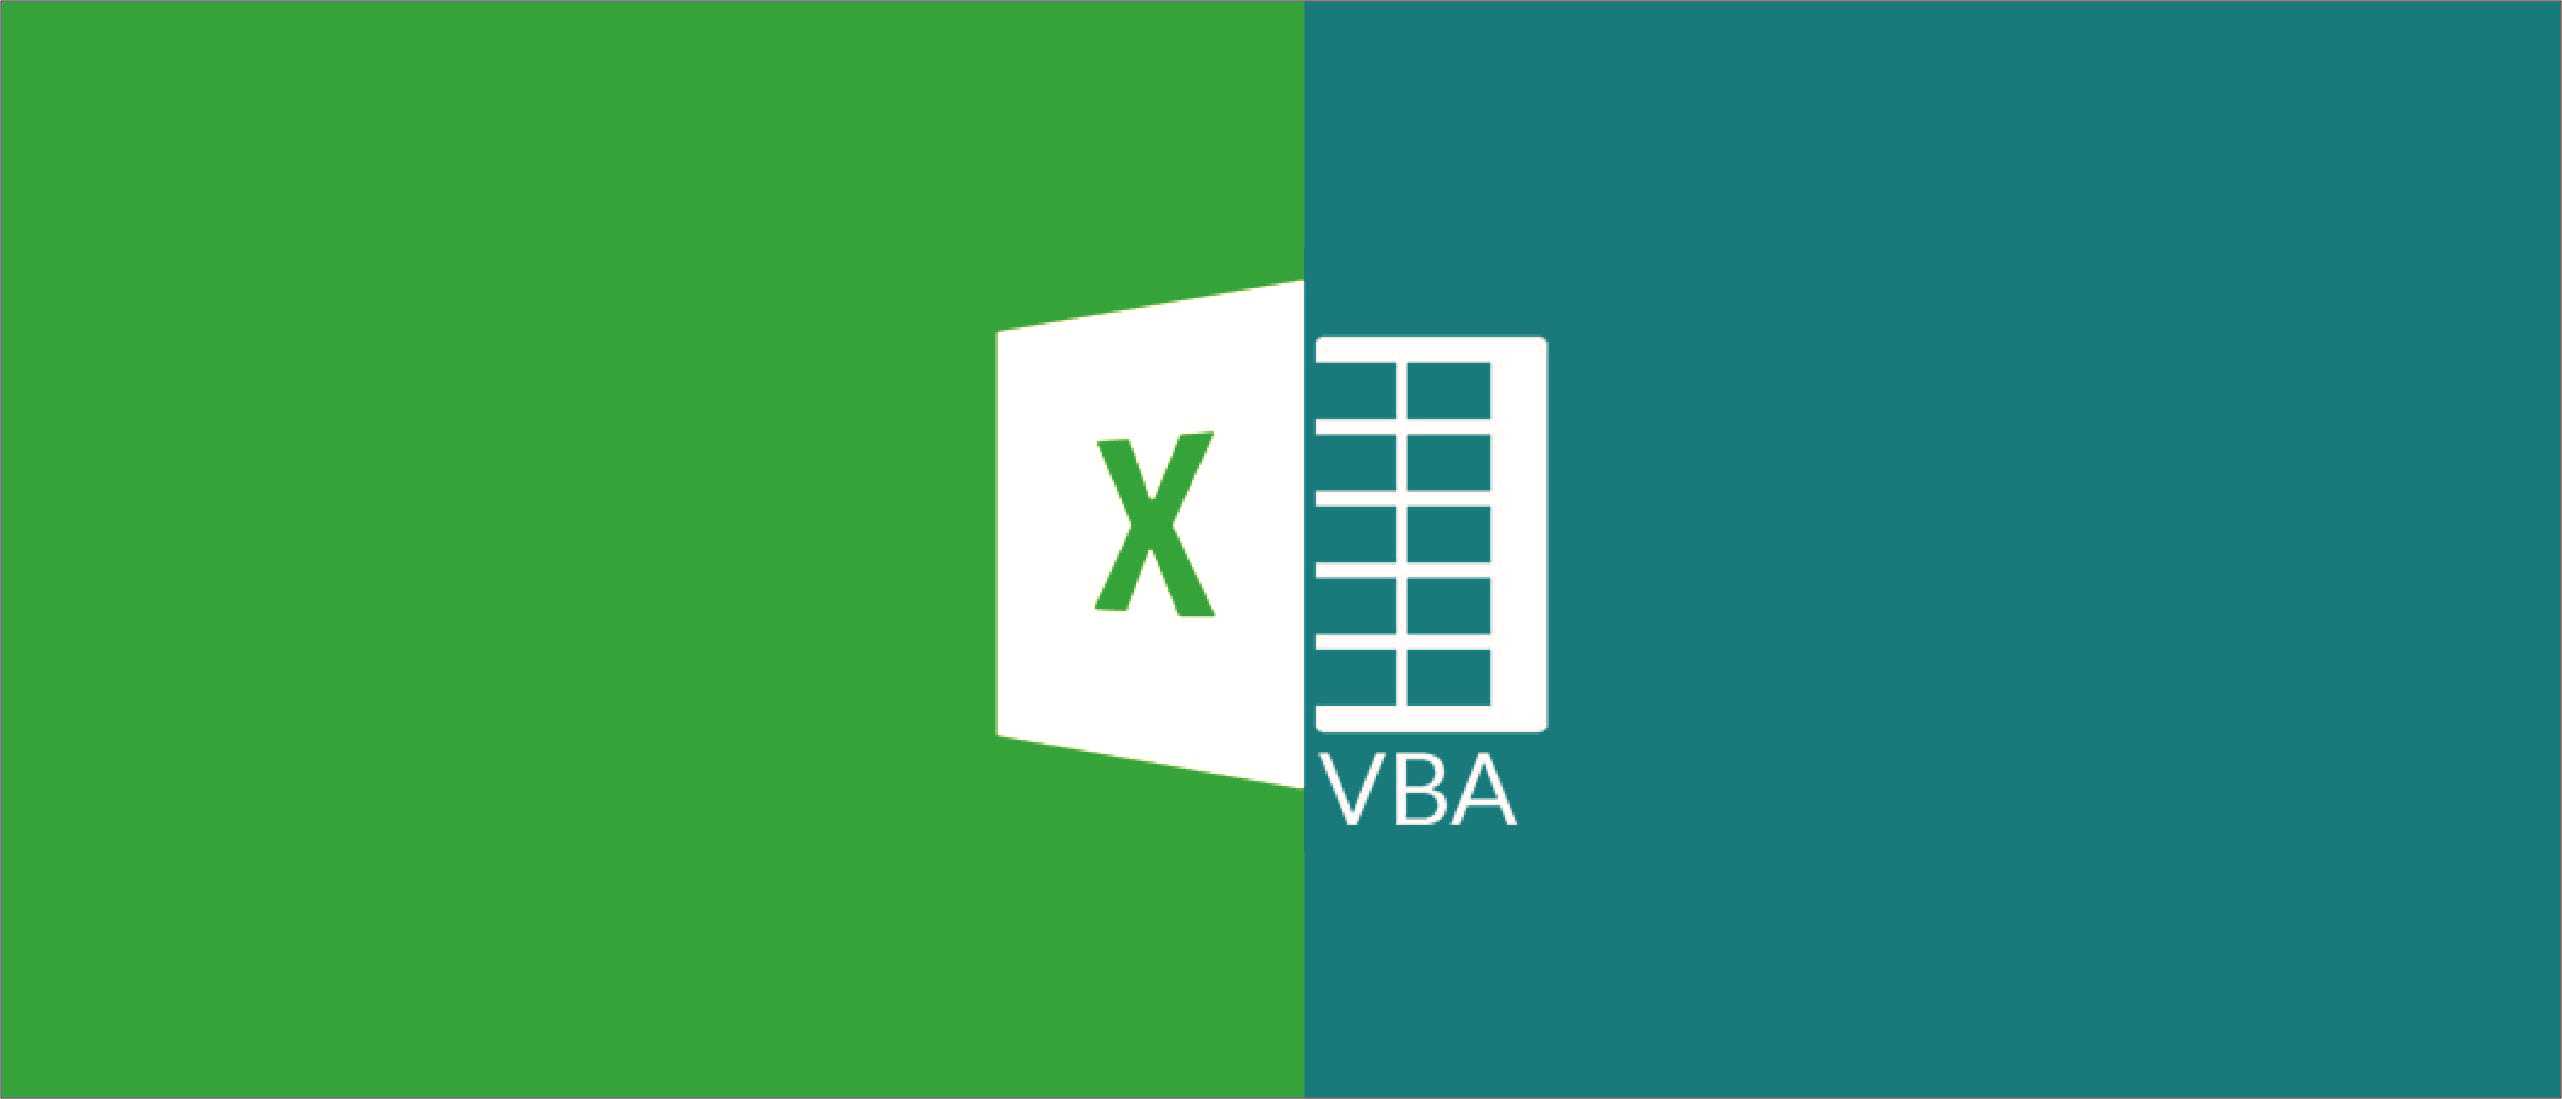 Tăng hiệu quả và năng suất công việc với VBA và Excel